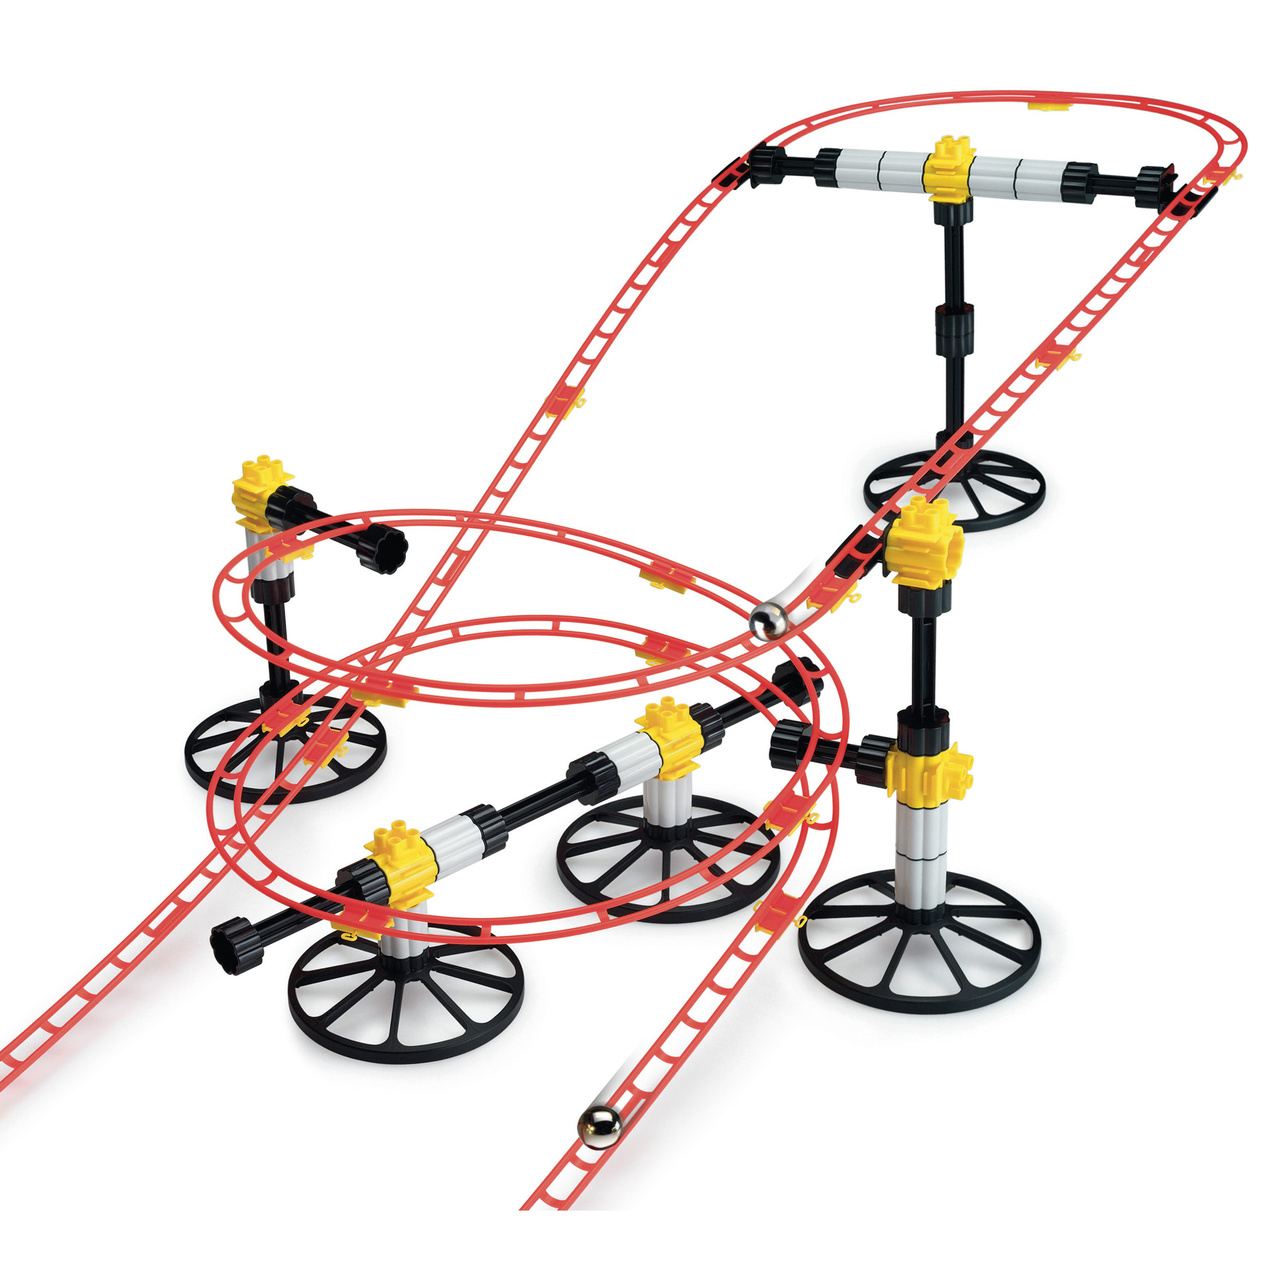 Construction toys quercetti skyrail roller coaster mini